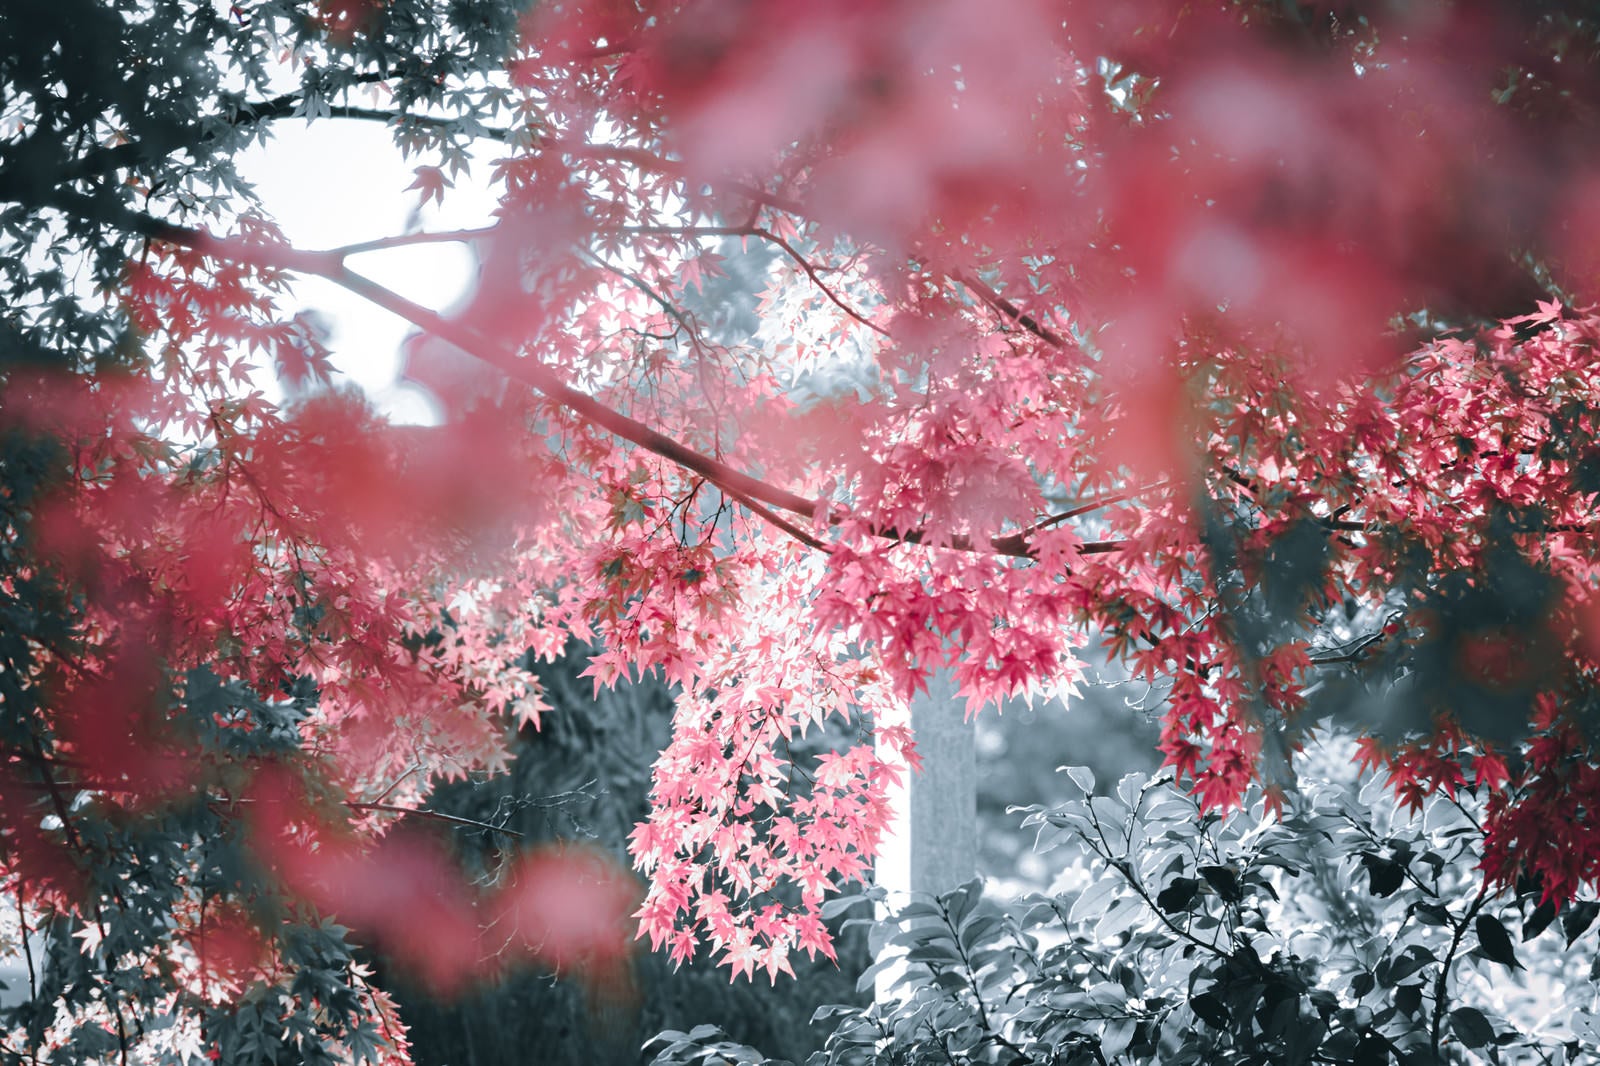 「神々しい光に包まれる紅葉の葉」の写真